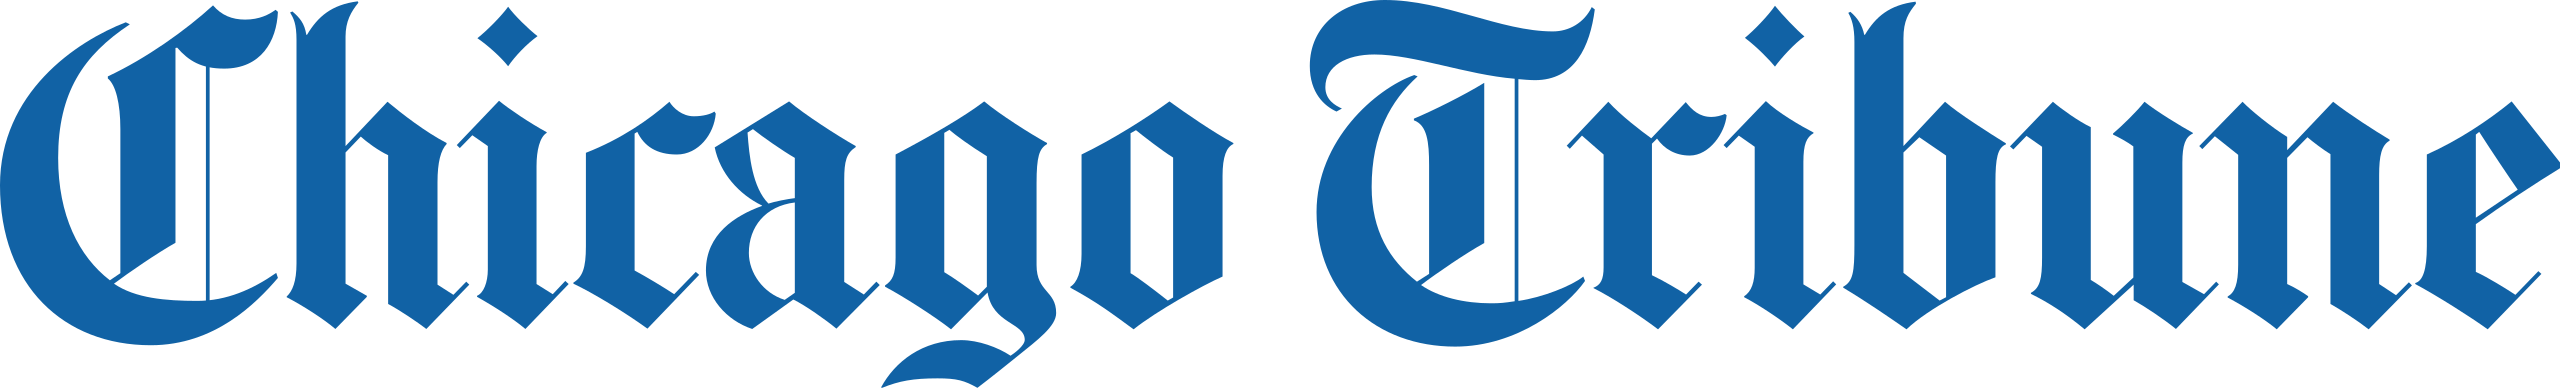 Chicago_Tribune_Logo.svg